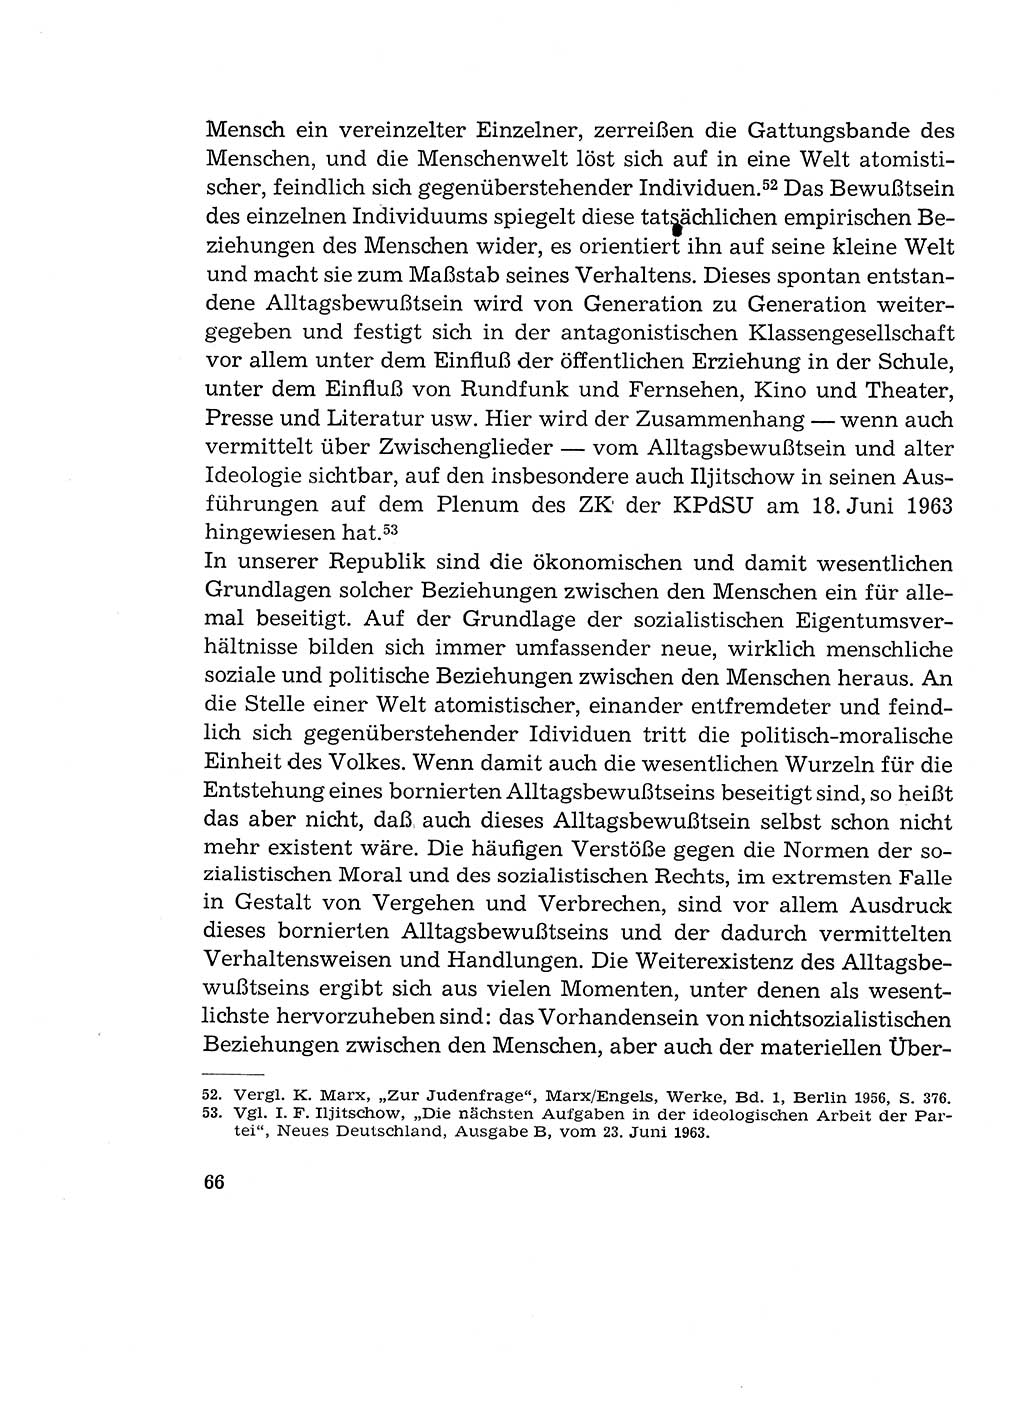 Verantwortung und Schuld im neuen Strafgesetzbuch (StGB) [Deutsche Demokratische Republik (DDR)] 1964, Seite 66 (Verantw. Sch. StGB DDR 1964, S. 66)